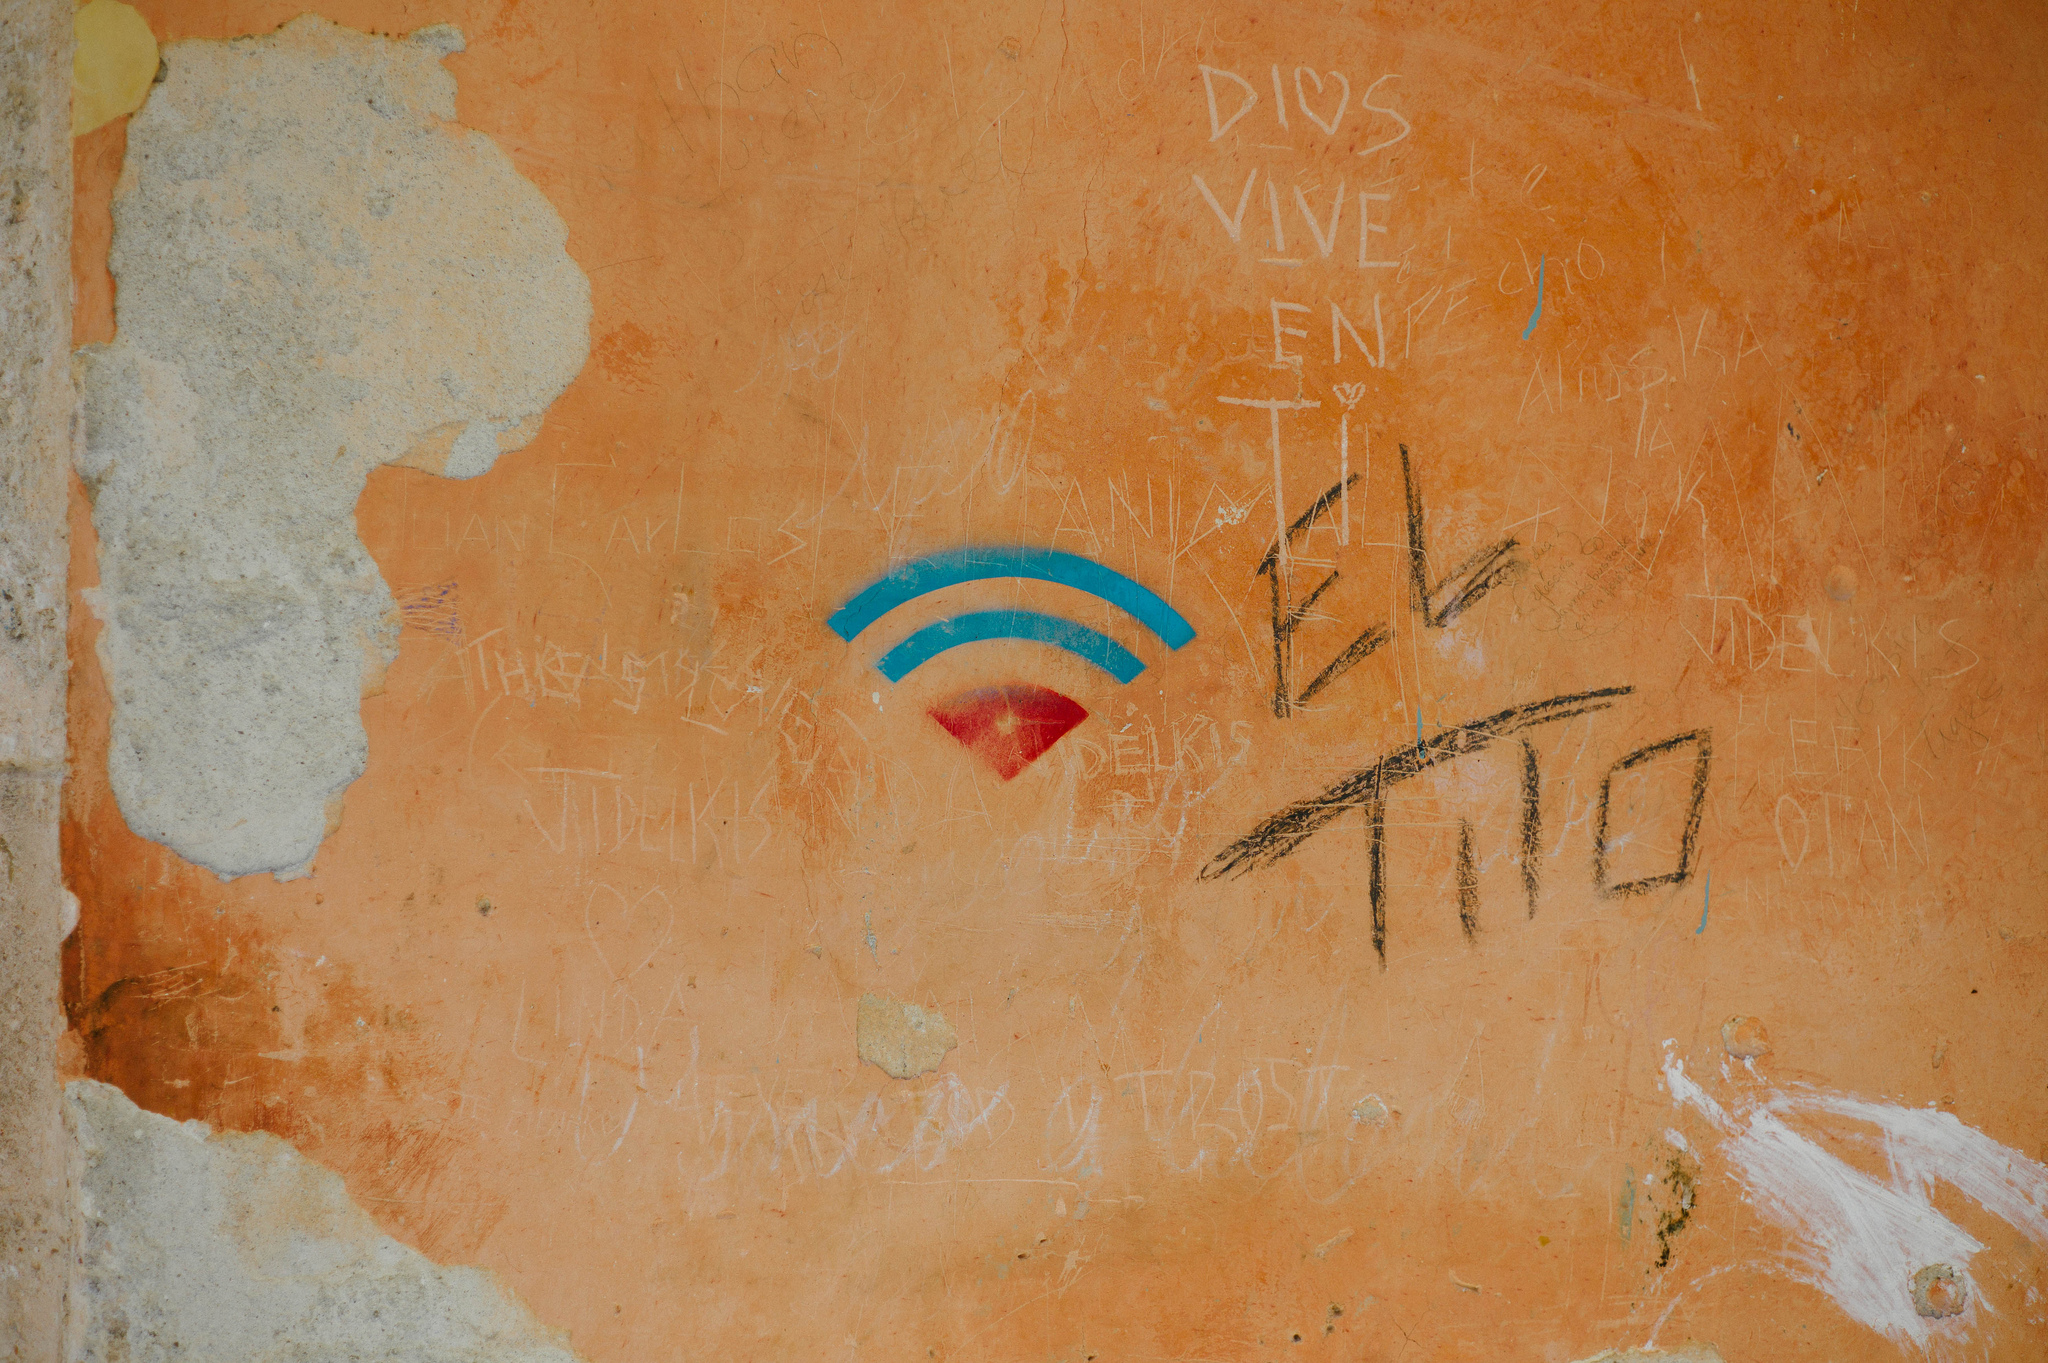 Символ WiFi в Старой Гаване, Куба. Фотограф: Нано Андерсон, источник: Flickr по лицензии CC License BY 2.0.